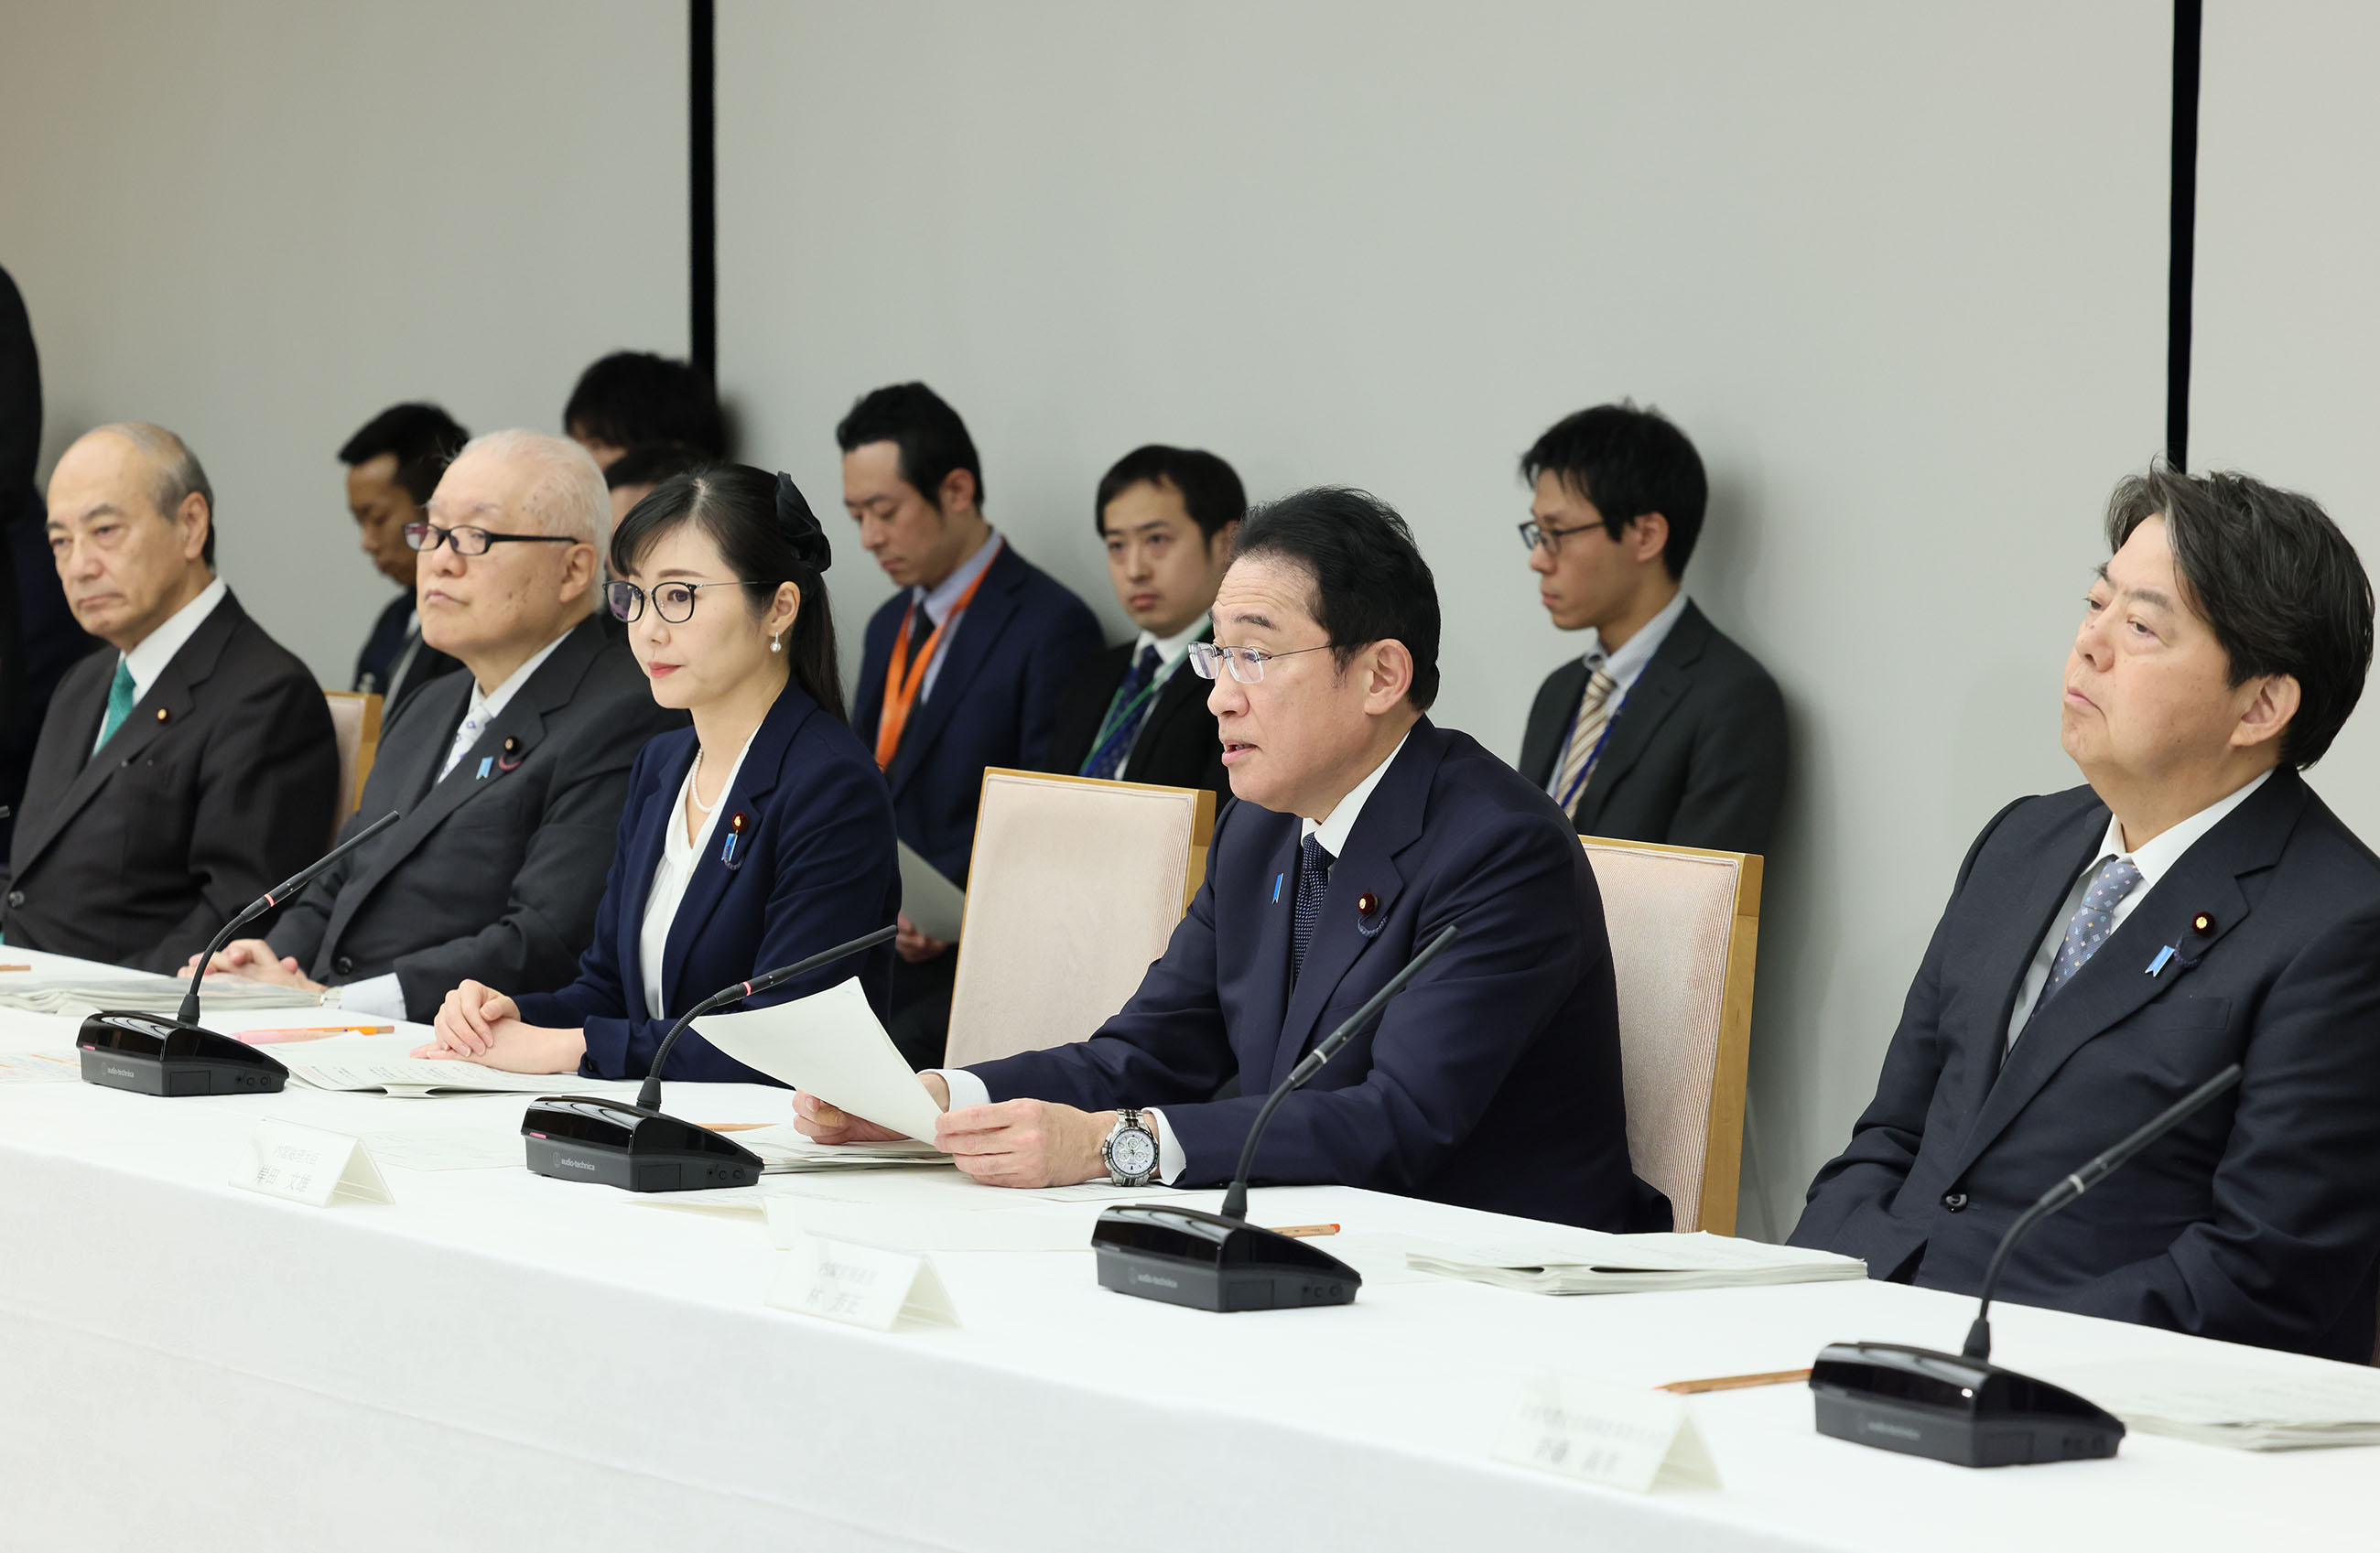 总结会议讨论的岸田首相